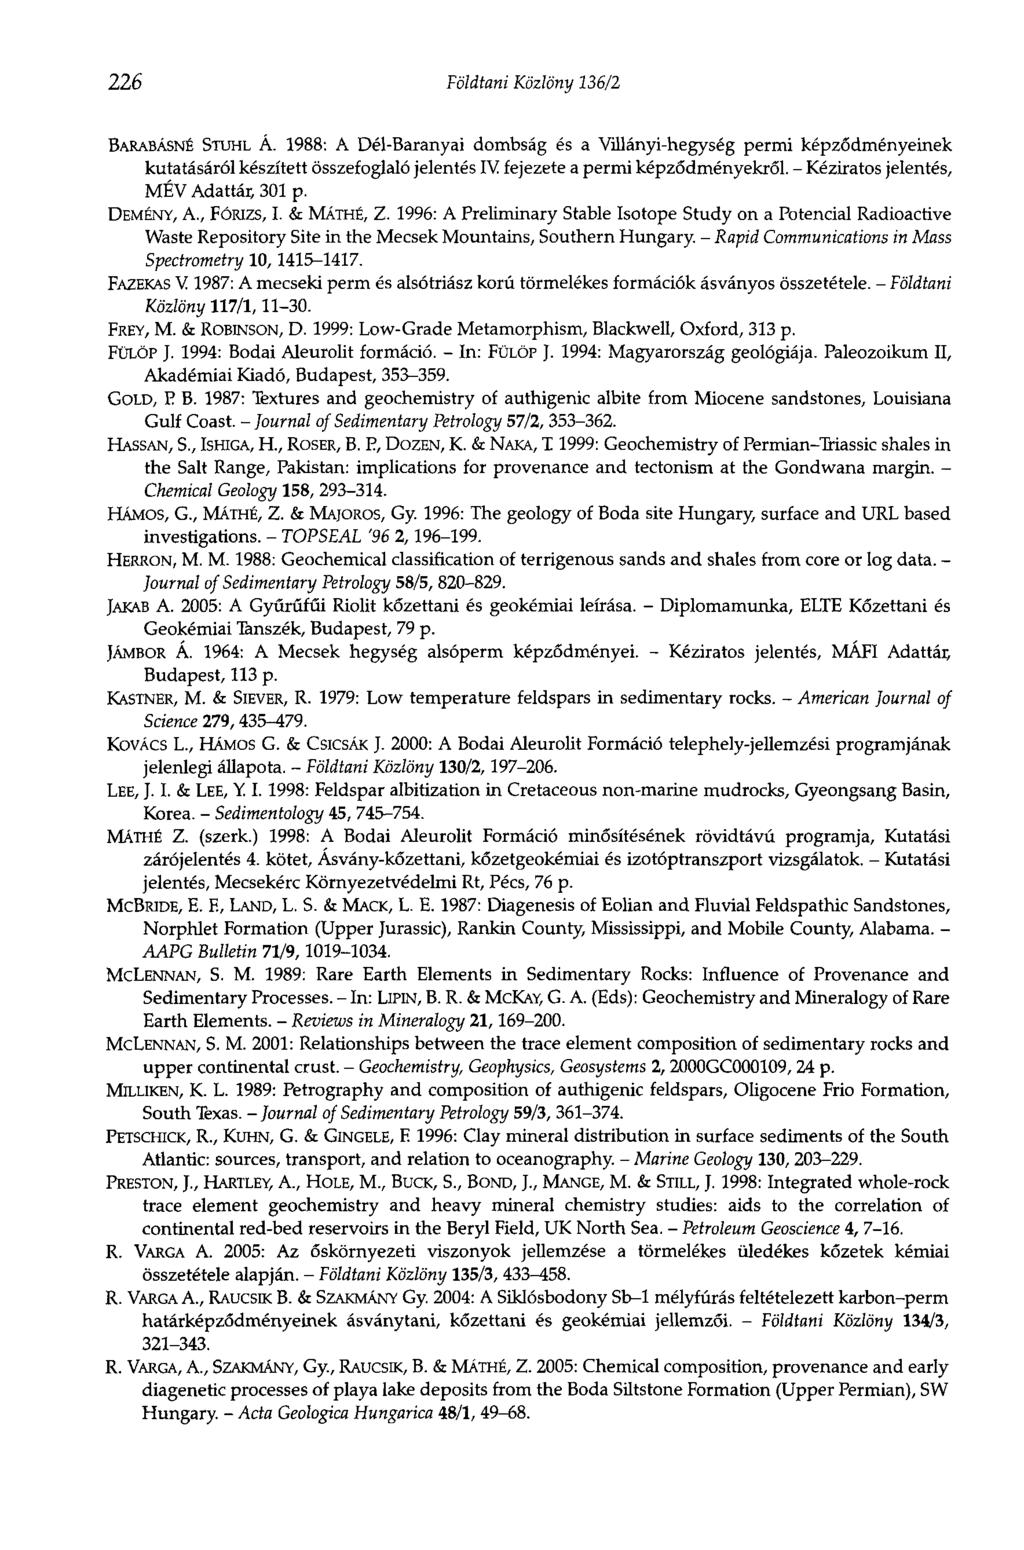 226 Földtani Közlöny 136/2 BARABÁSNÉ STUHL Á. 1988: A Dél-Baranyai dombság és a Villányi-hegység permi képződményeinek kutatásáról készített összefoglaló jelentés IV fejezete a permi képződményekről.